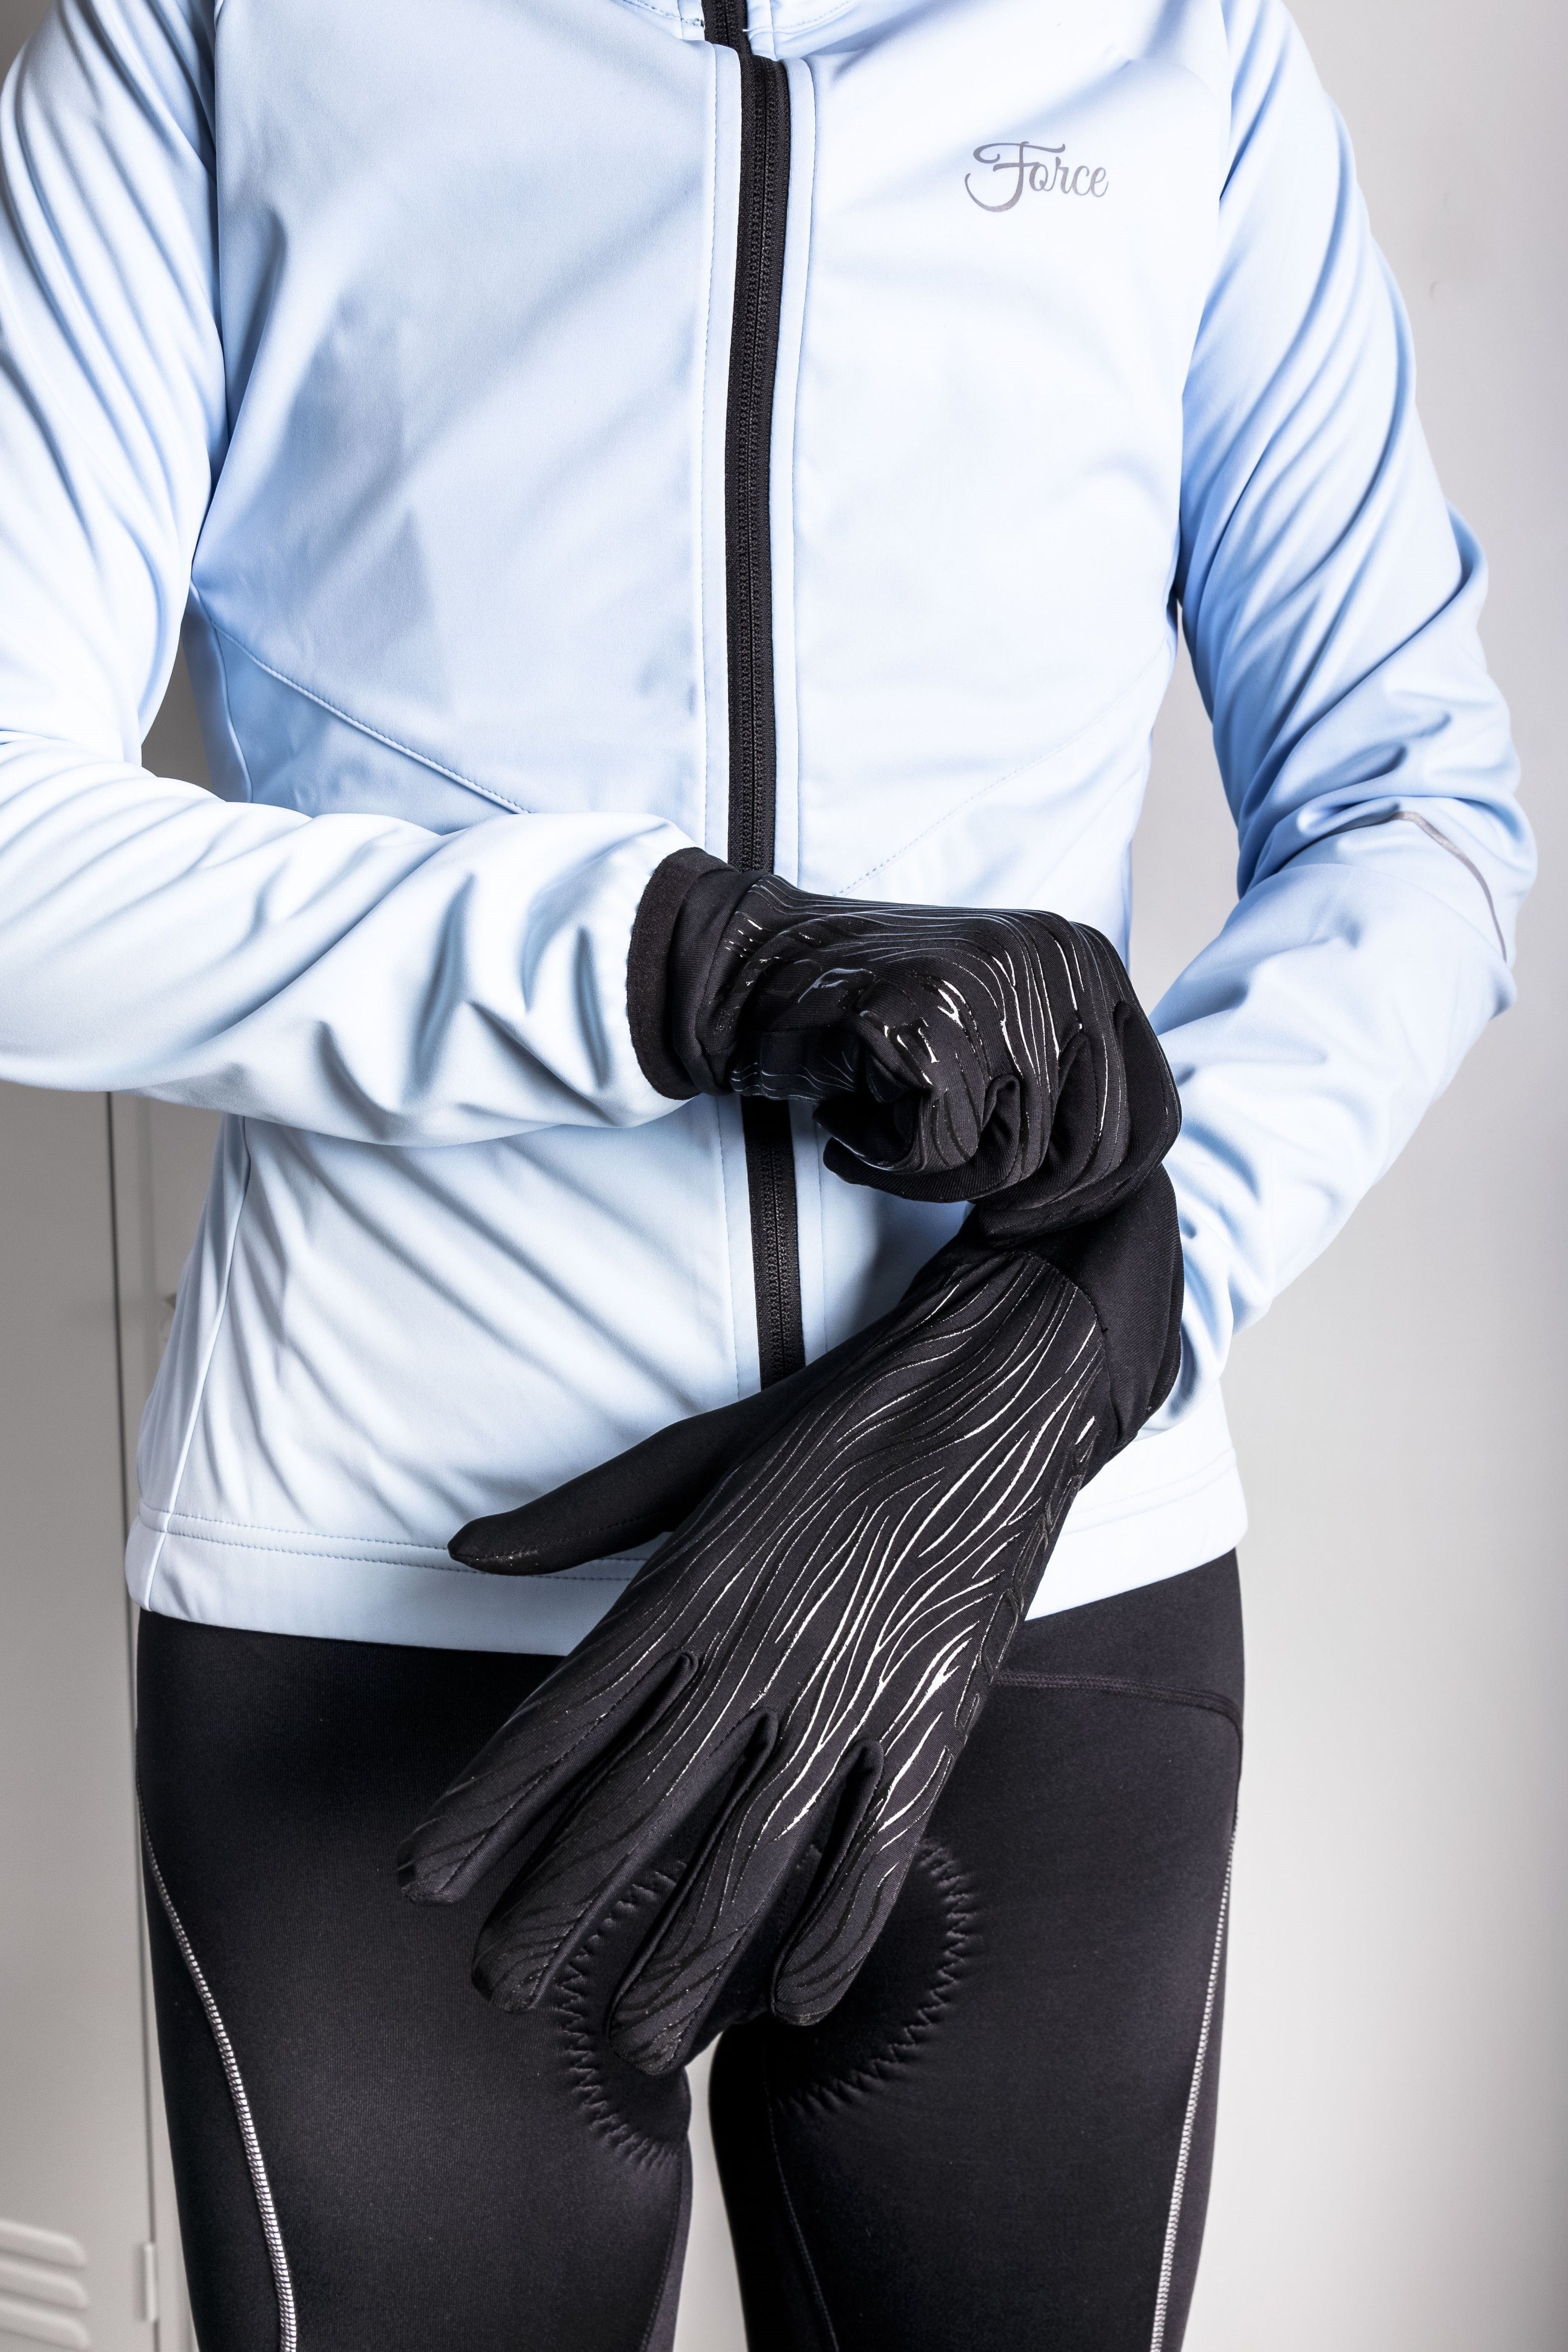 °C °C schwarz FORCE und FORCE TIGER Handschuhe Fahrradhandschuhe +15 +10